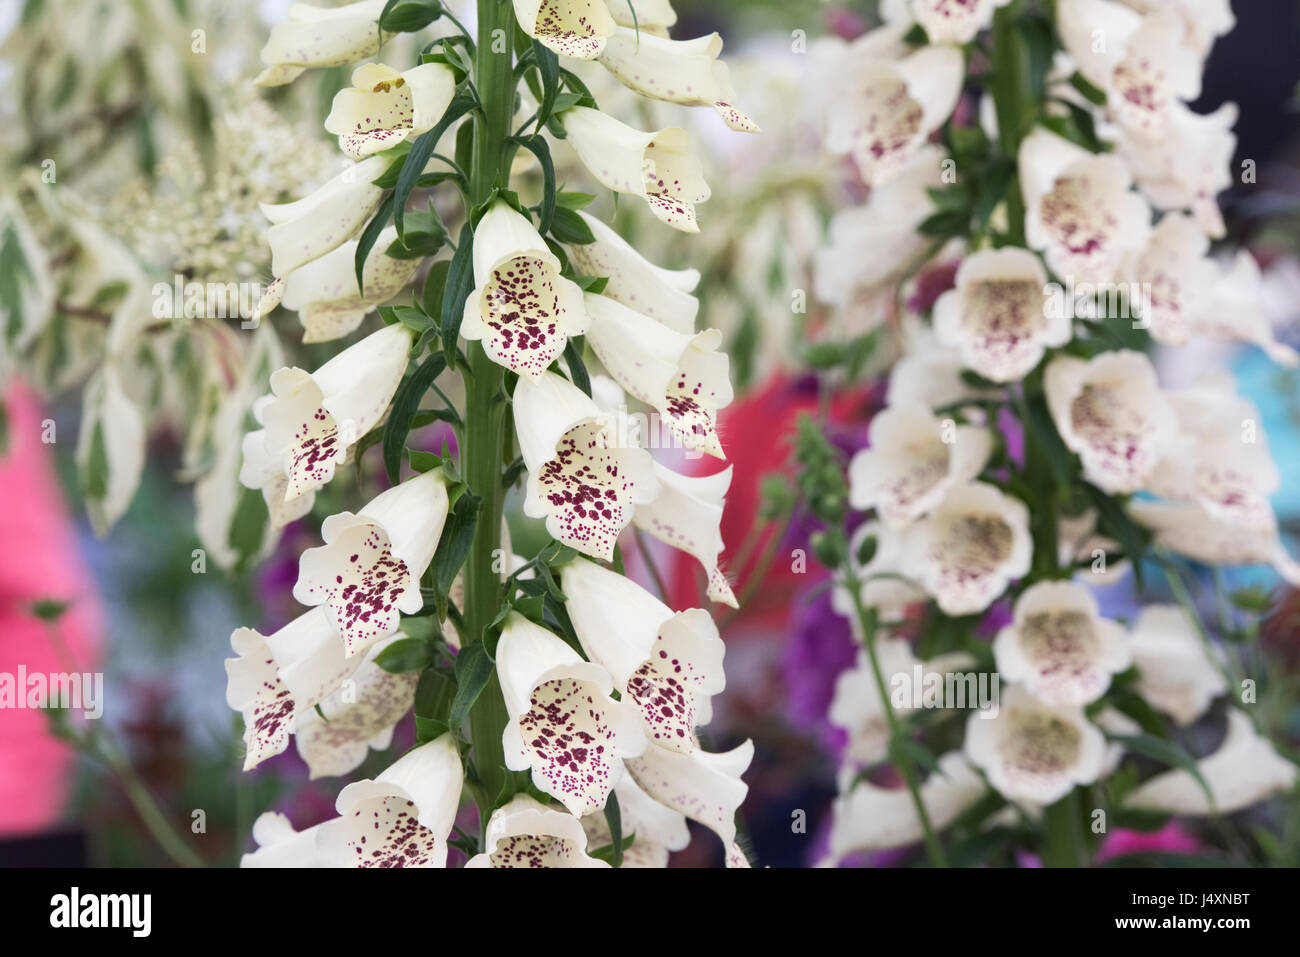 Digitalis Purpurea 'Dalmatian Cream'. Foxglove Stock Photo